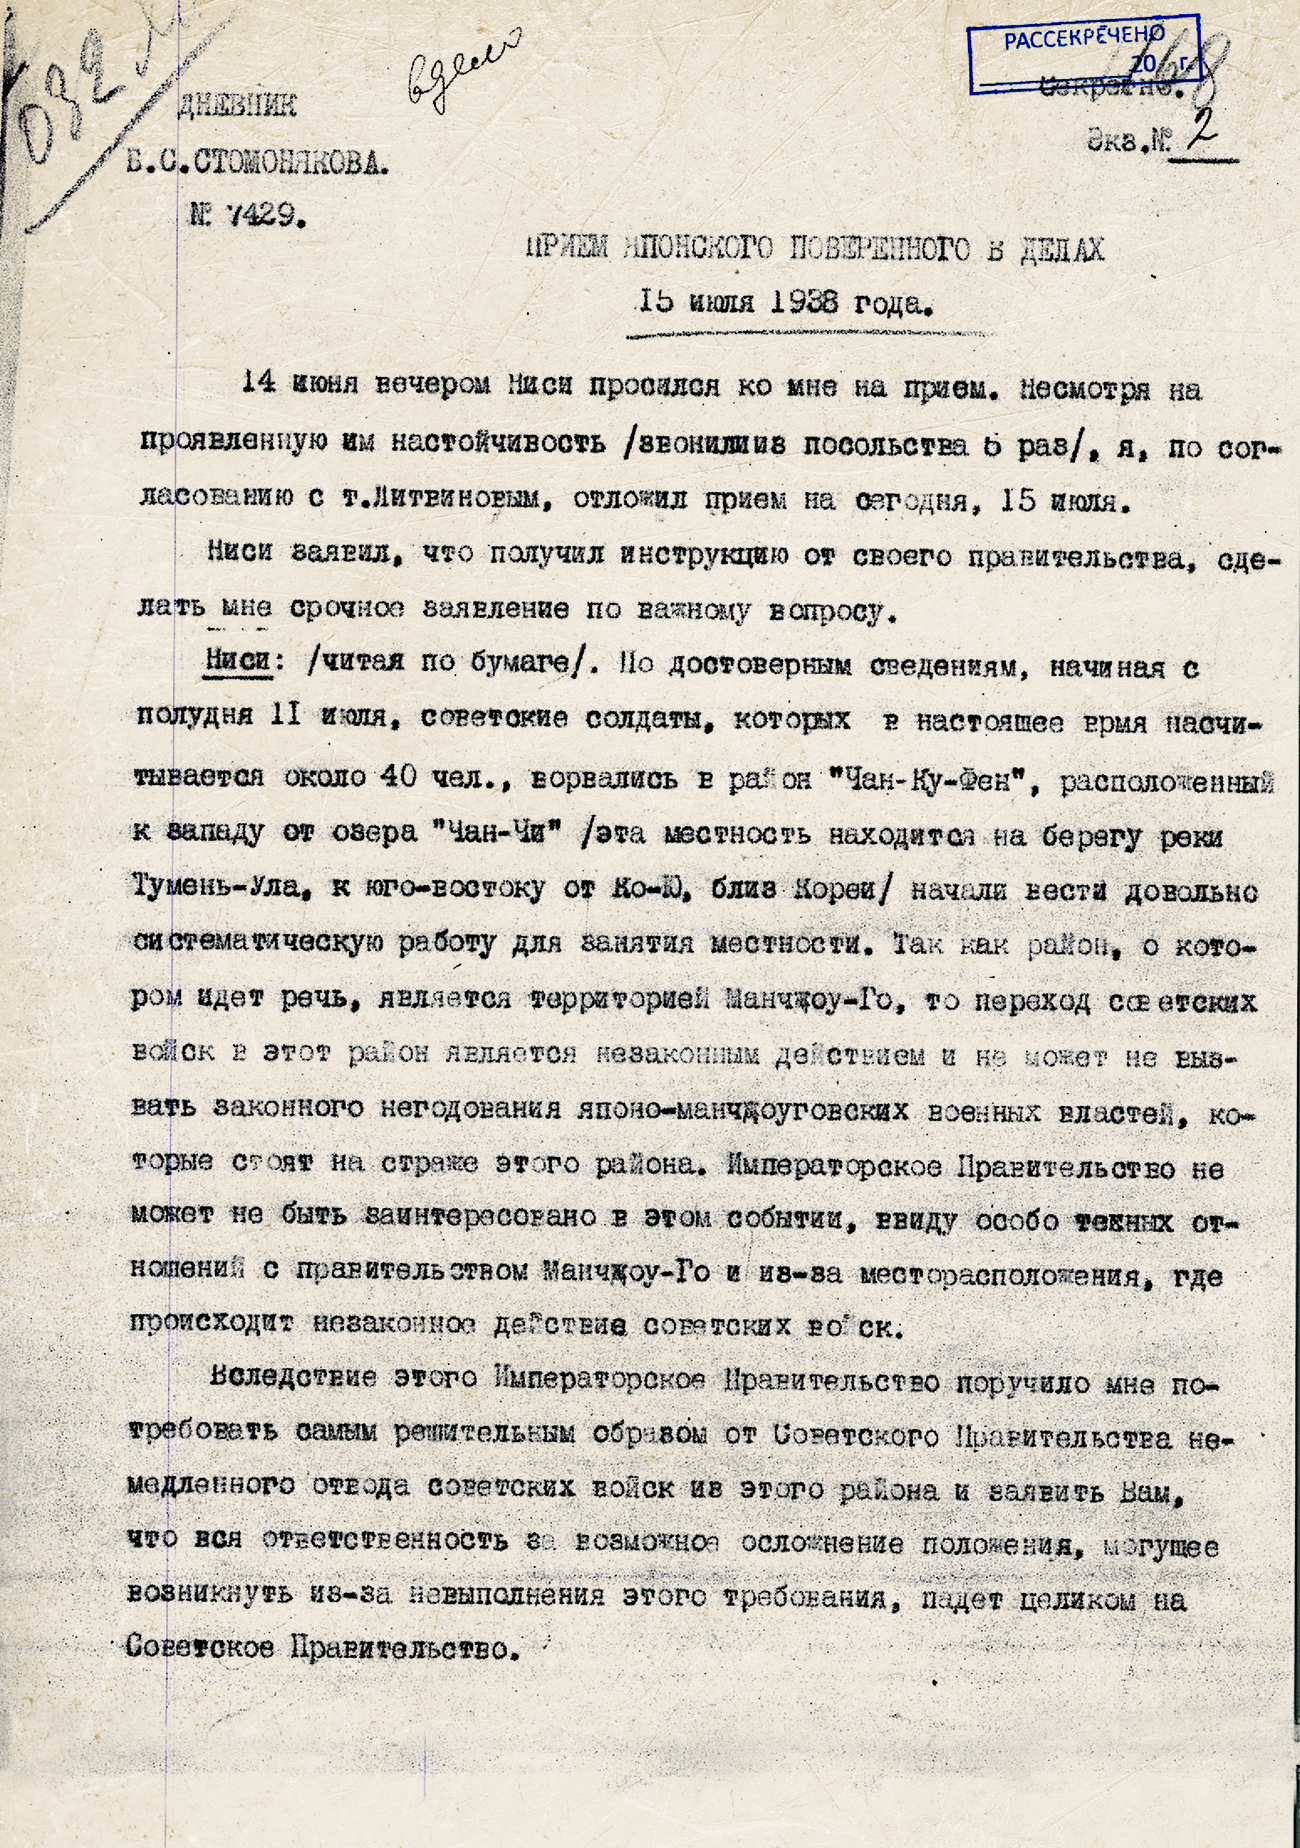 Из Дневника Б.С. Стомонякова. Приём японского поверенного в делах 15 июля 1938 года